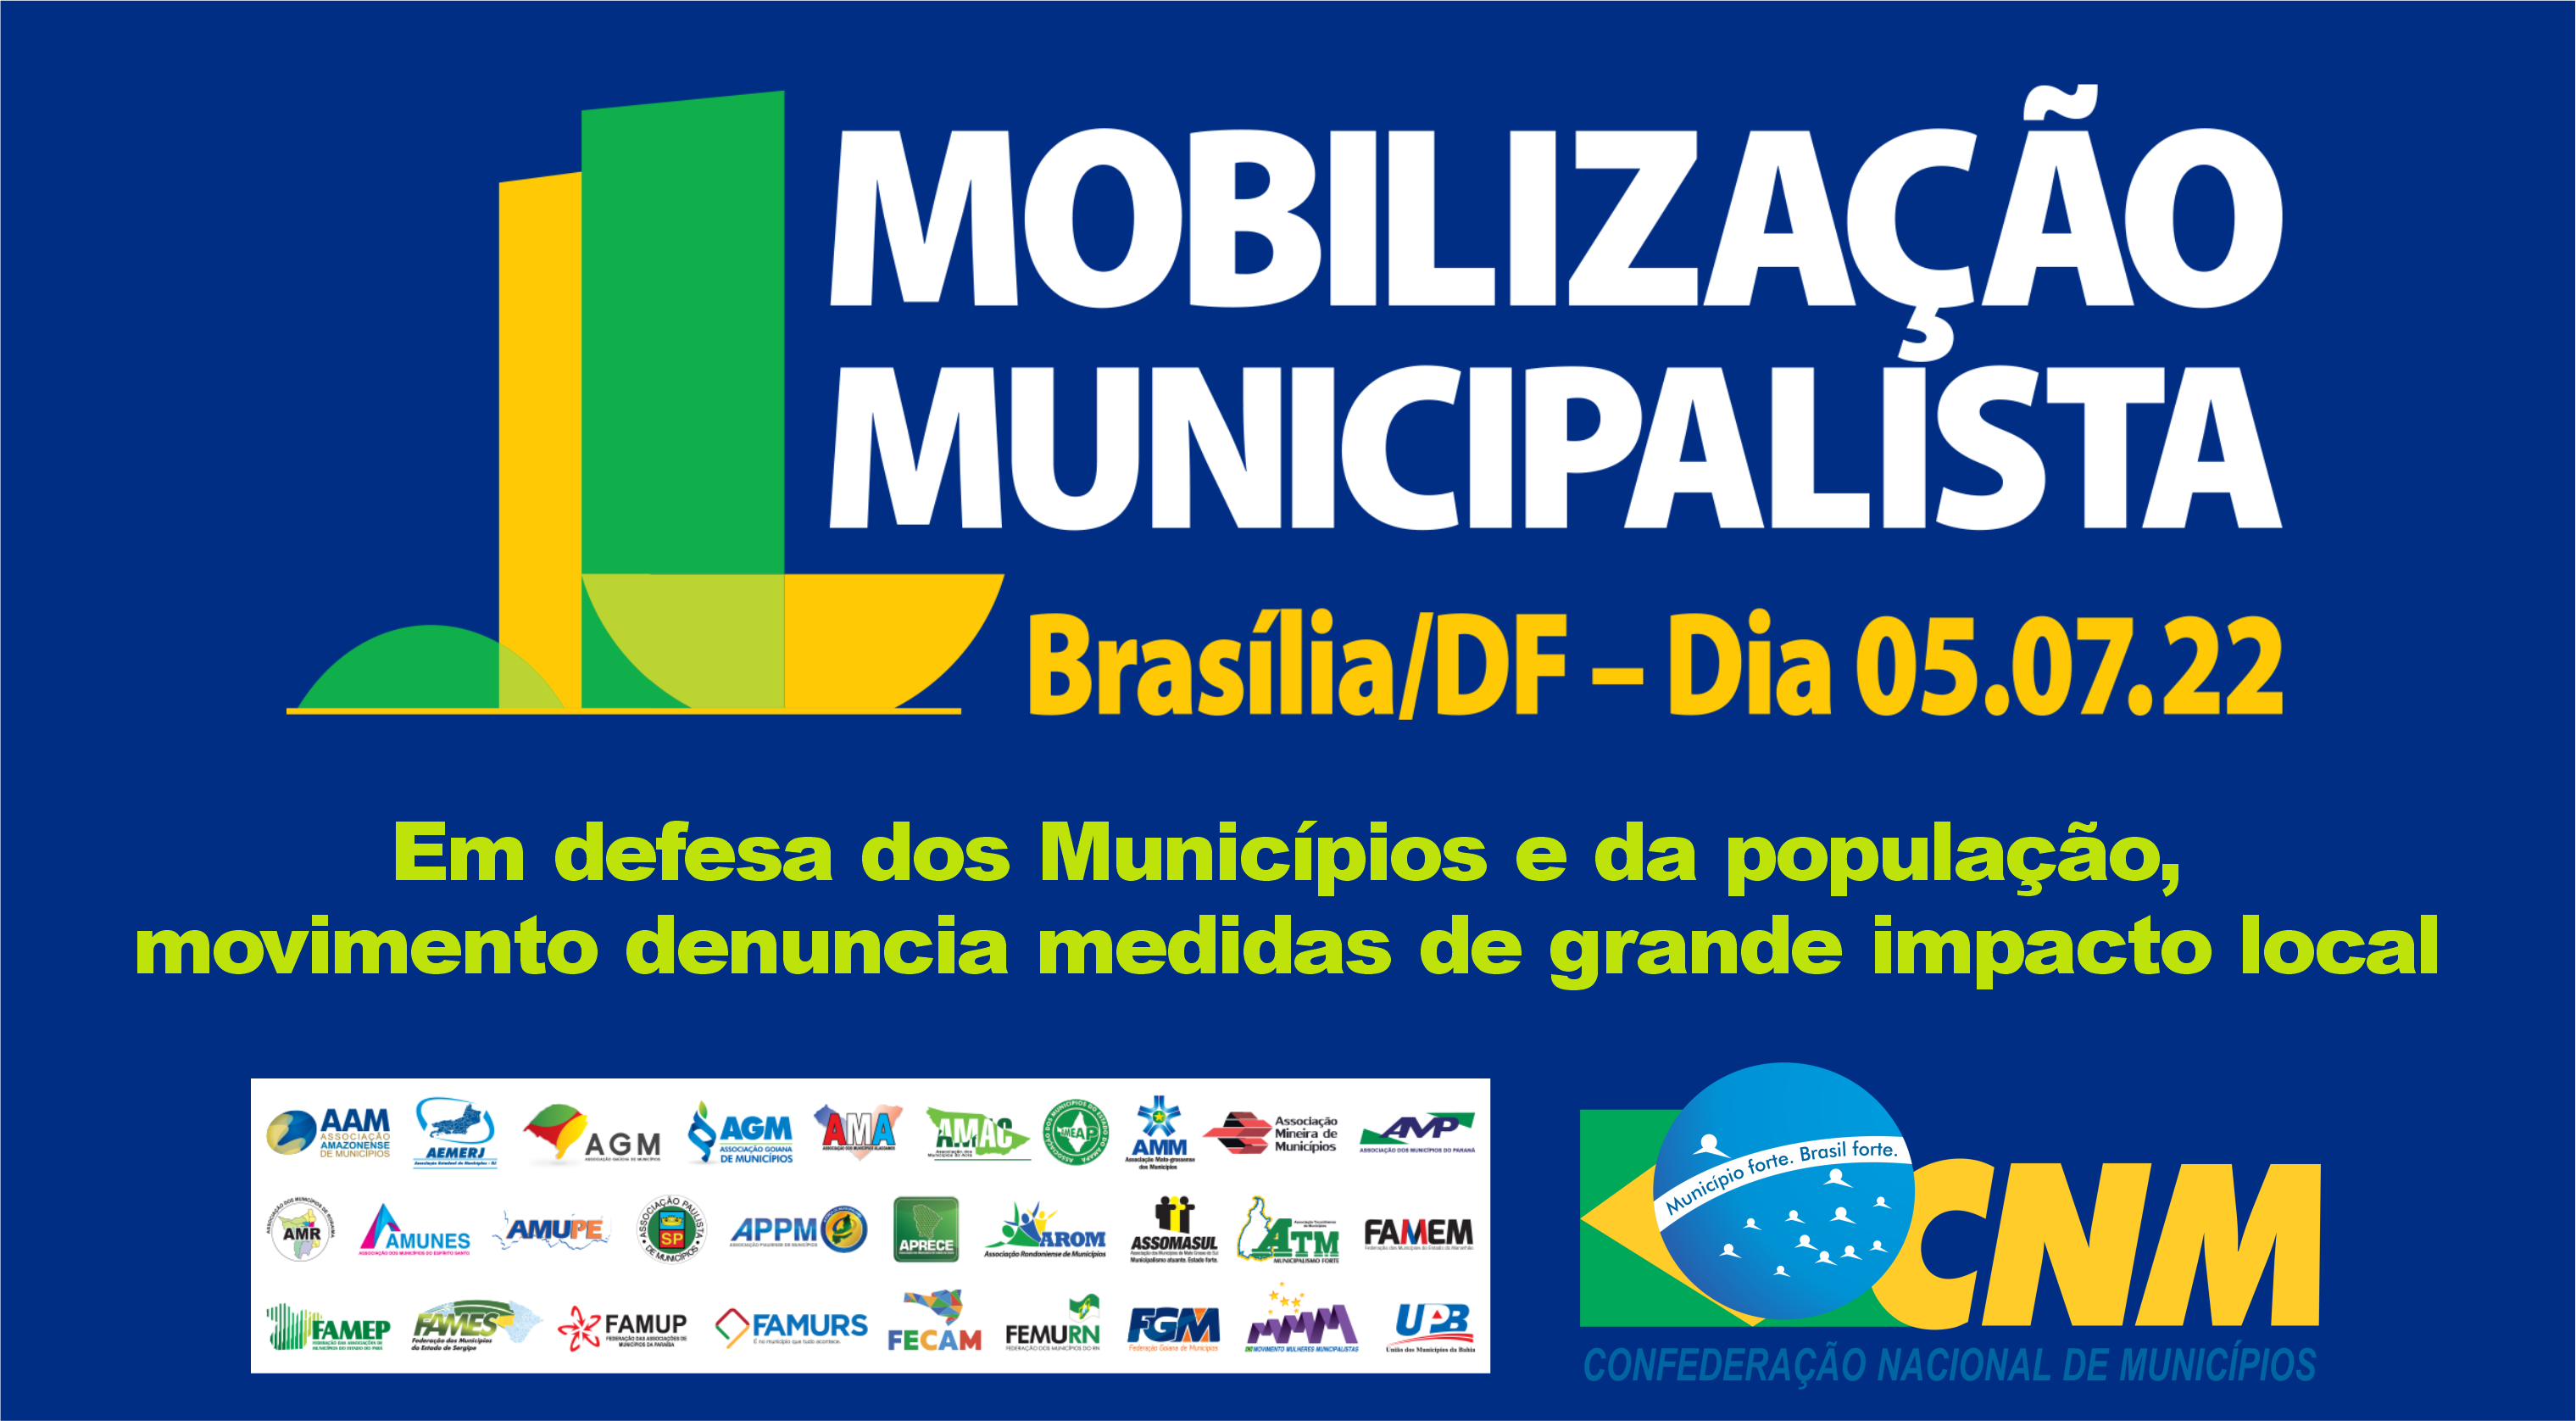 Prefeito participa de ato municipalista em Brasília nesta terça